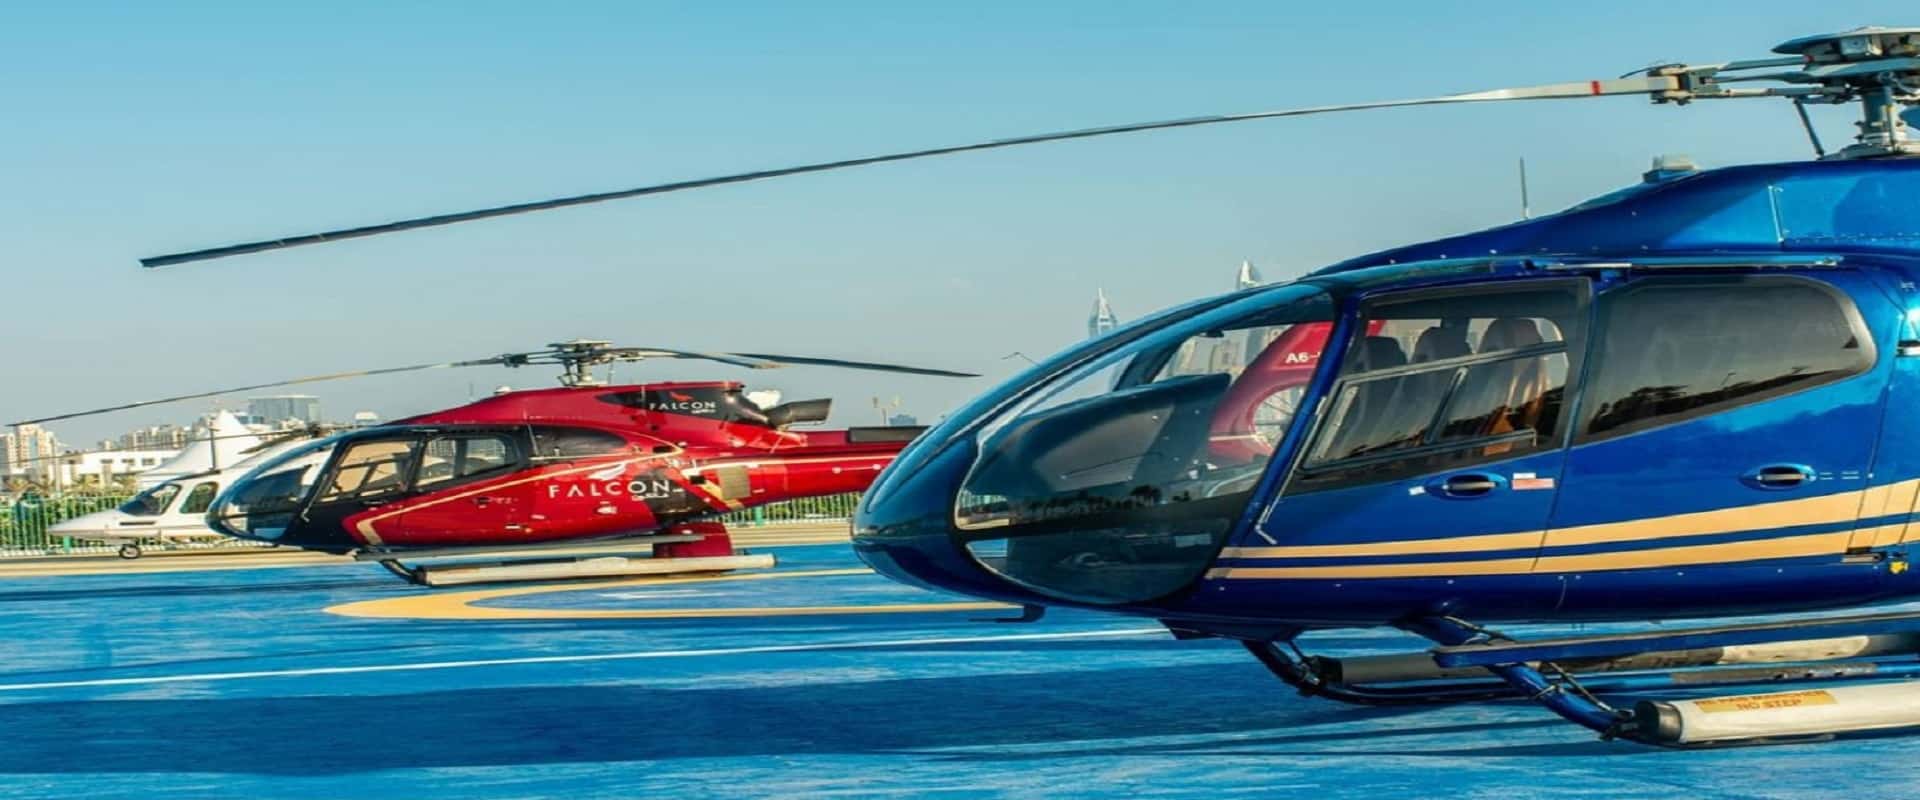 Privatna vožnja helikopterom iz Atlantide